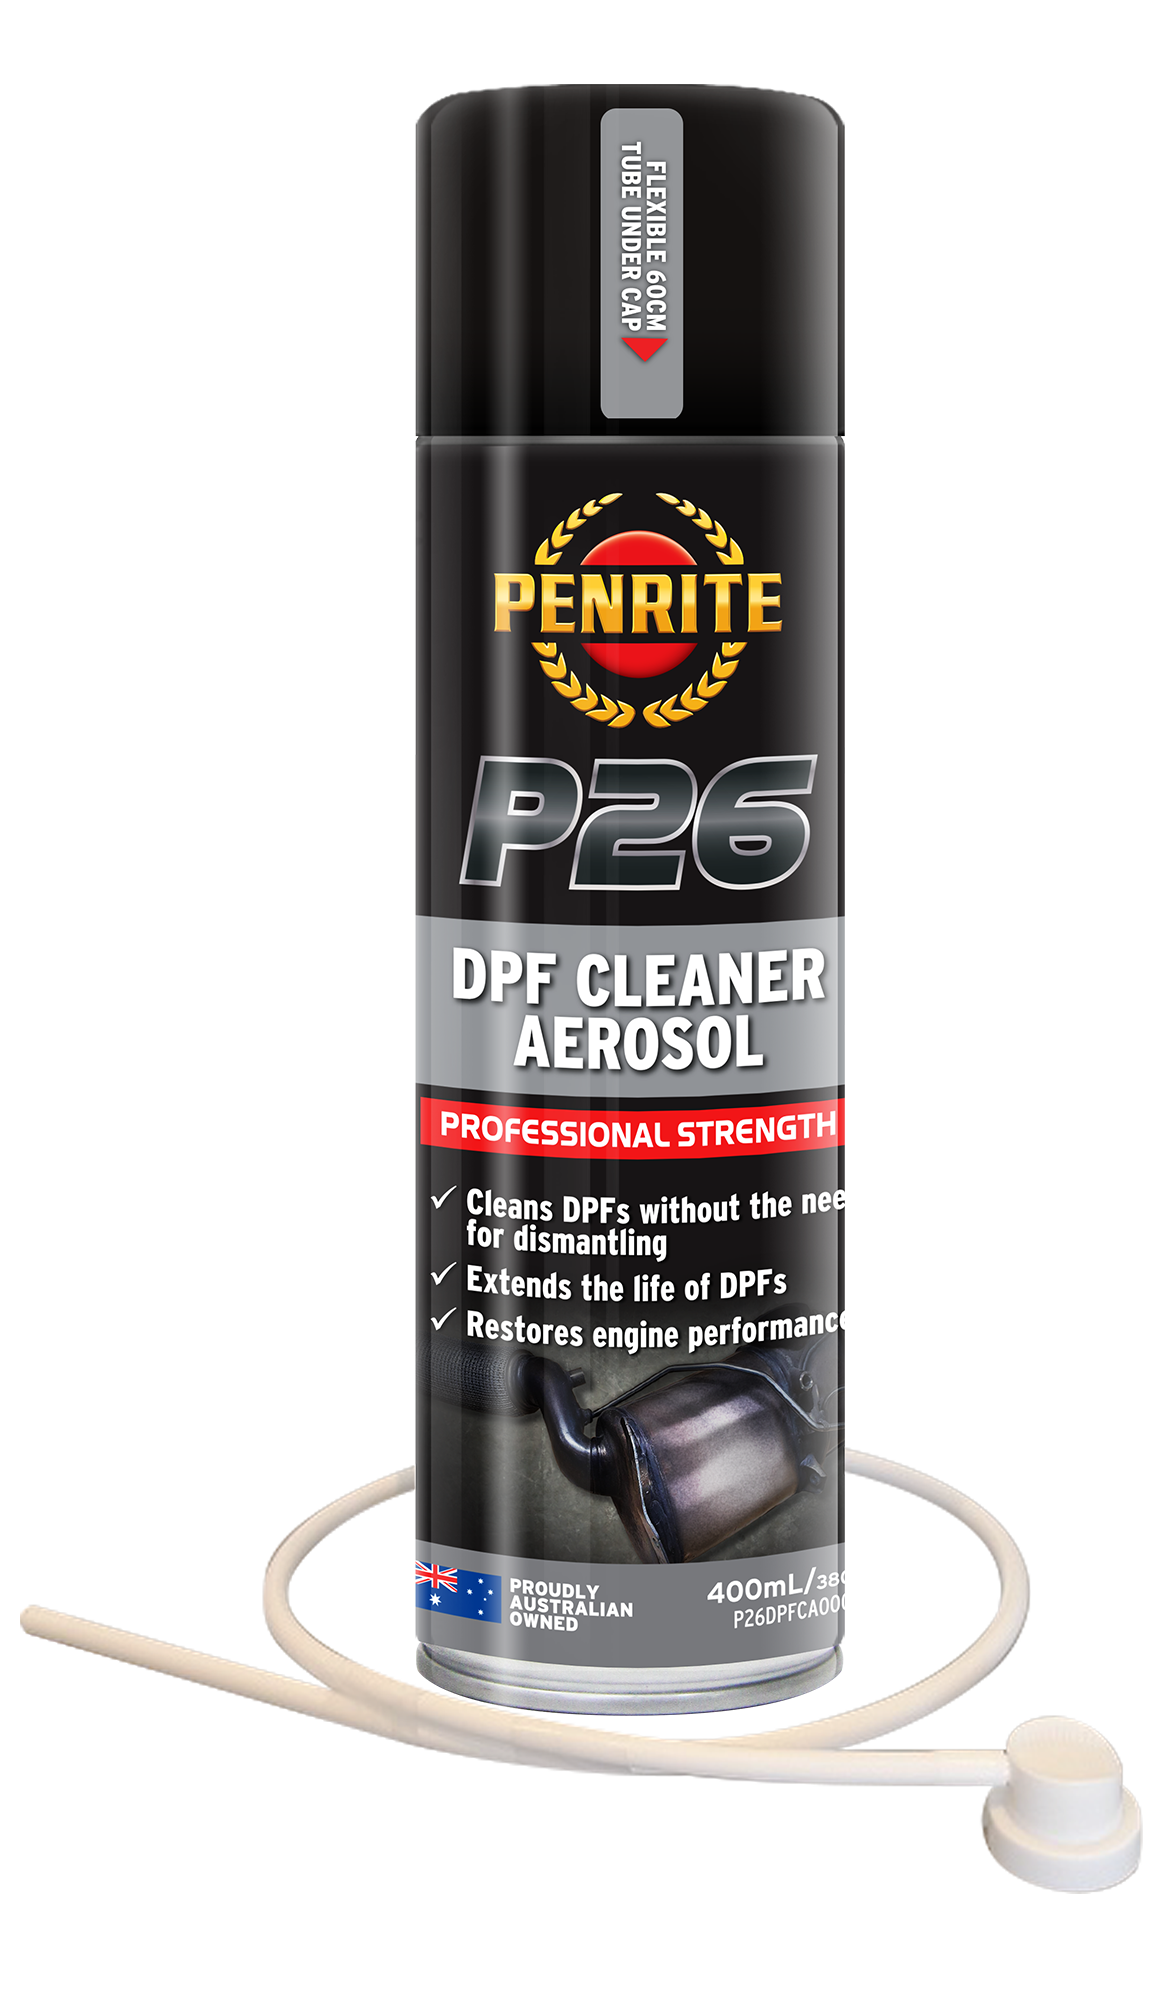 P26 DPF Cleaner Aerosol 400ml - Penrite | Universal Auto Spares